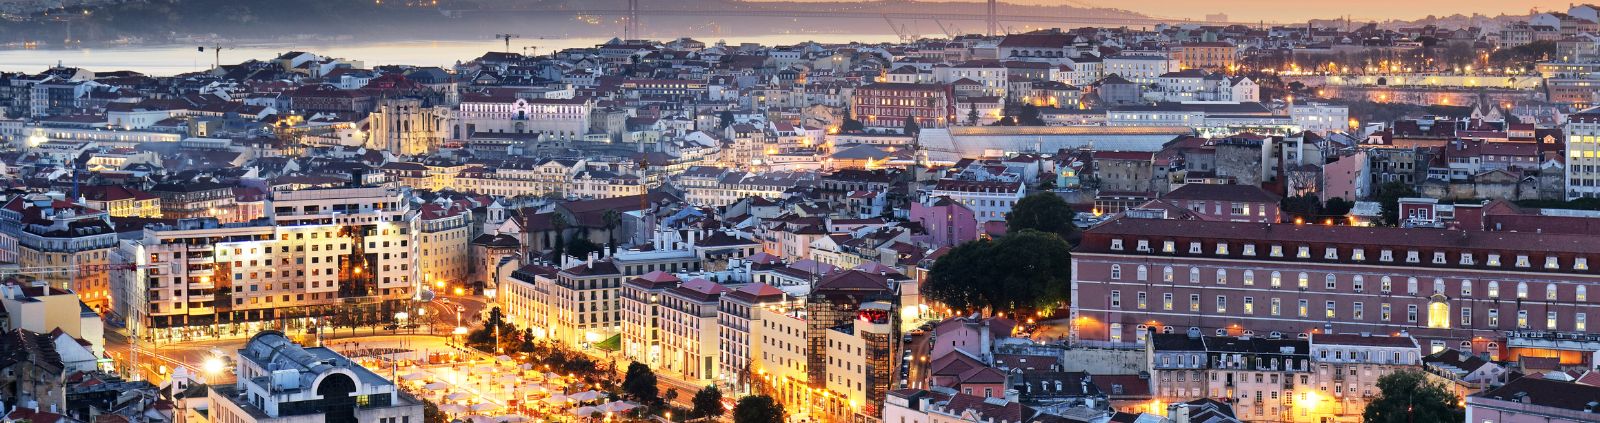 Lissabon in der Dämmerung